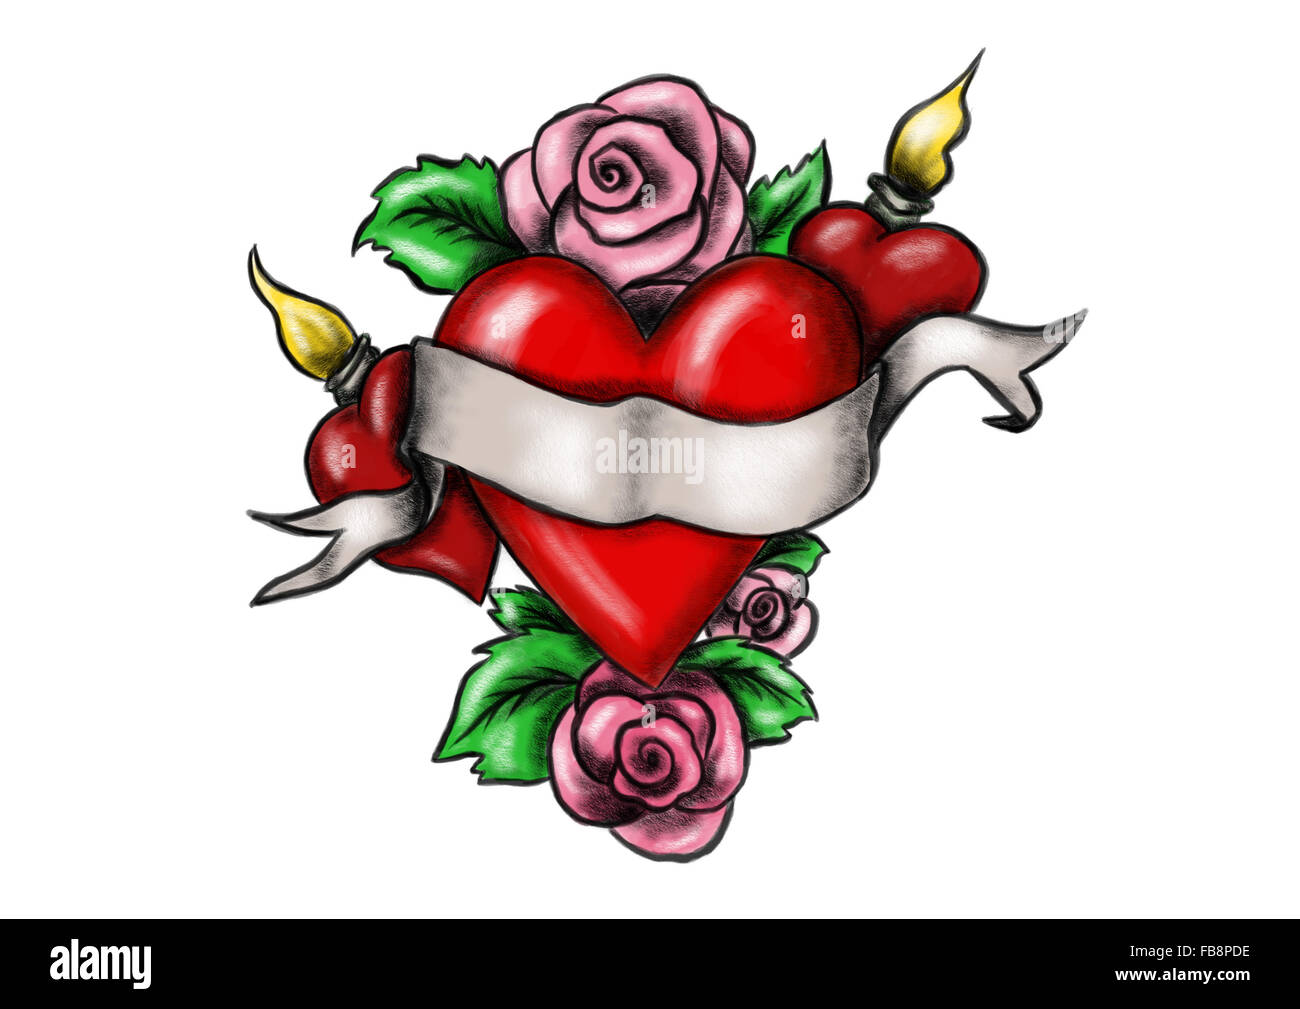 Coeur avec ruban entouré de roses Photo Stock - Alamy